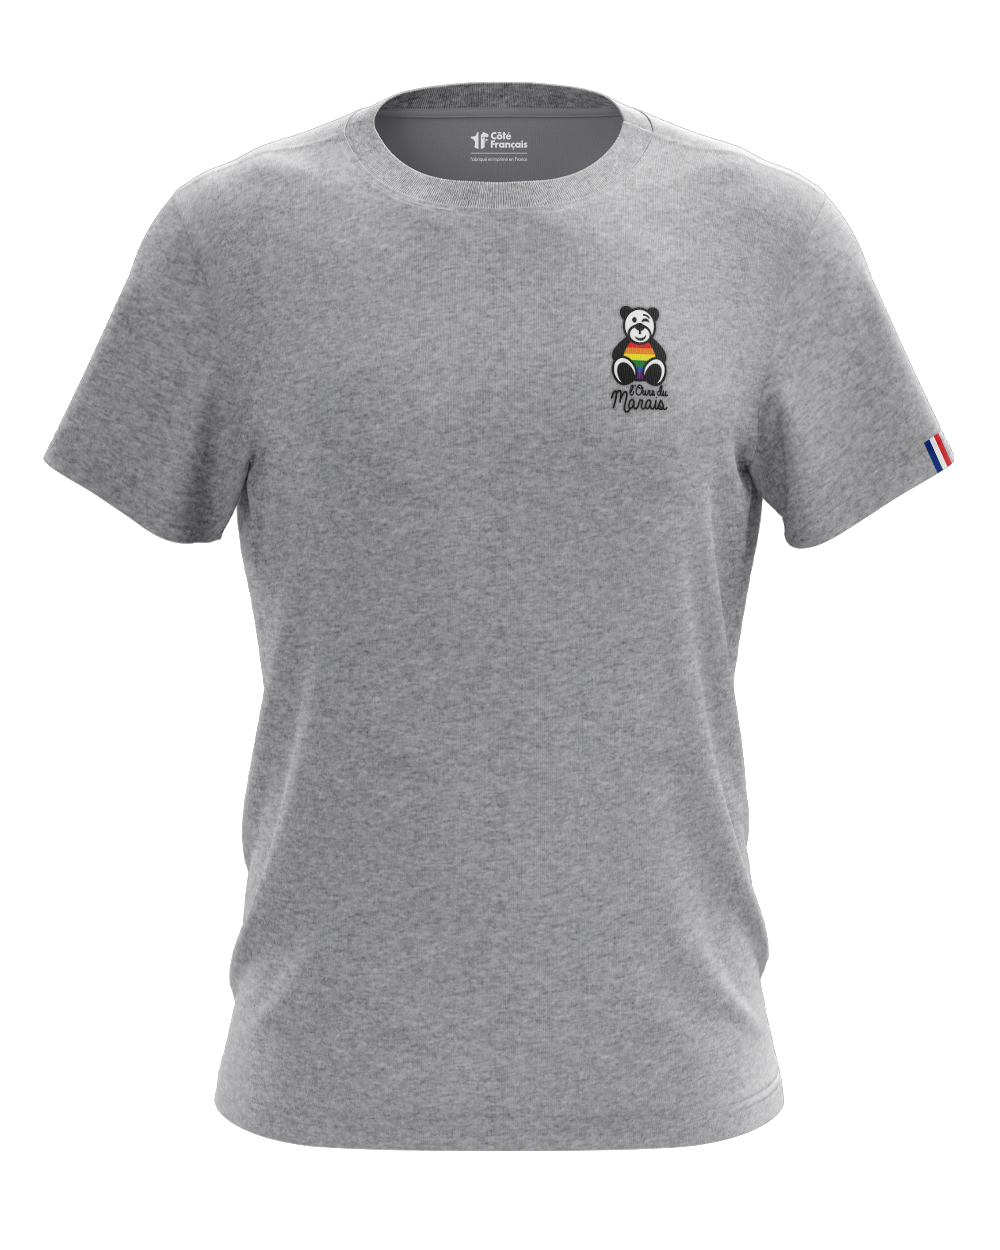 T-Shirt "Ours du Marais" - gris chiné